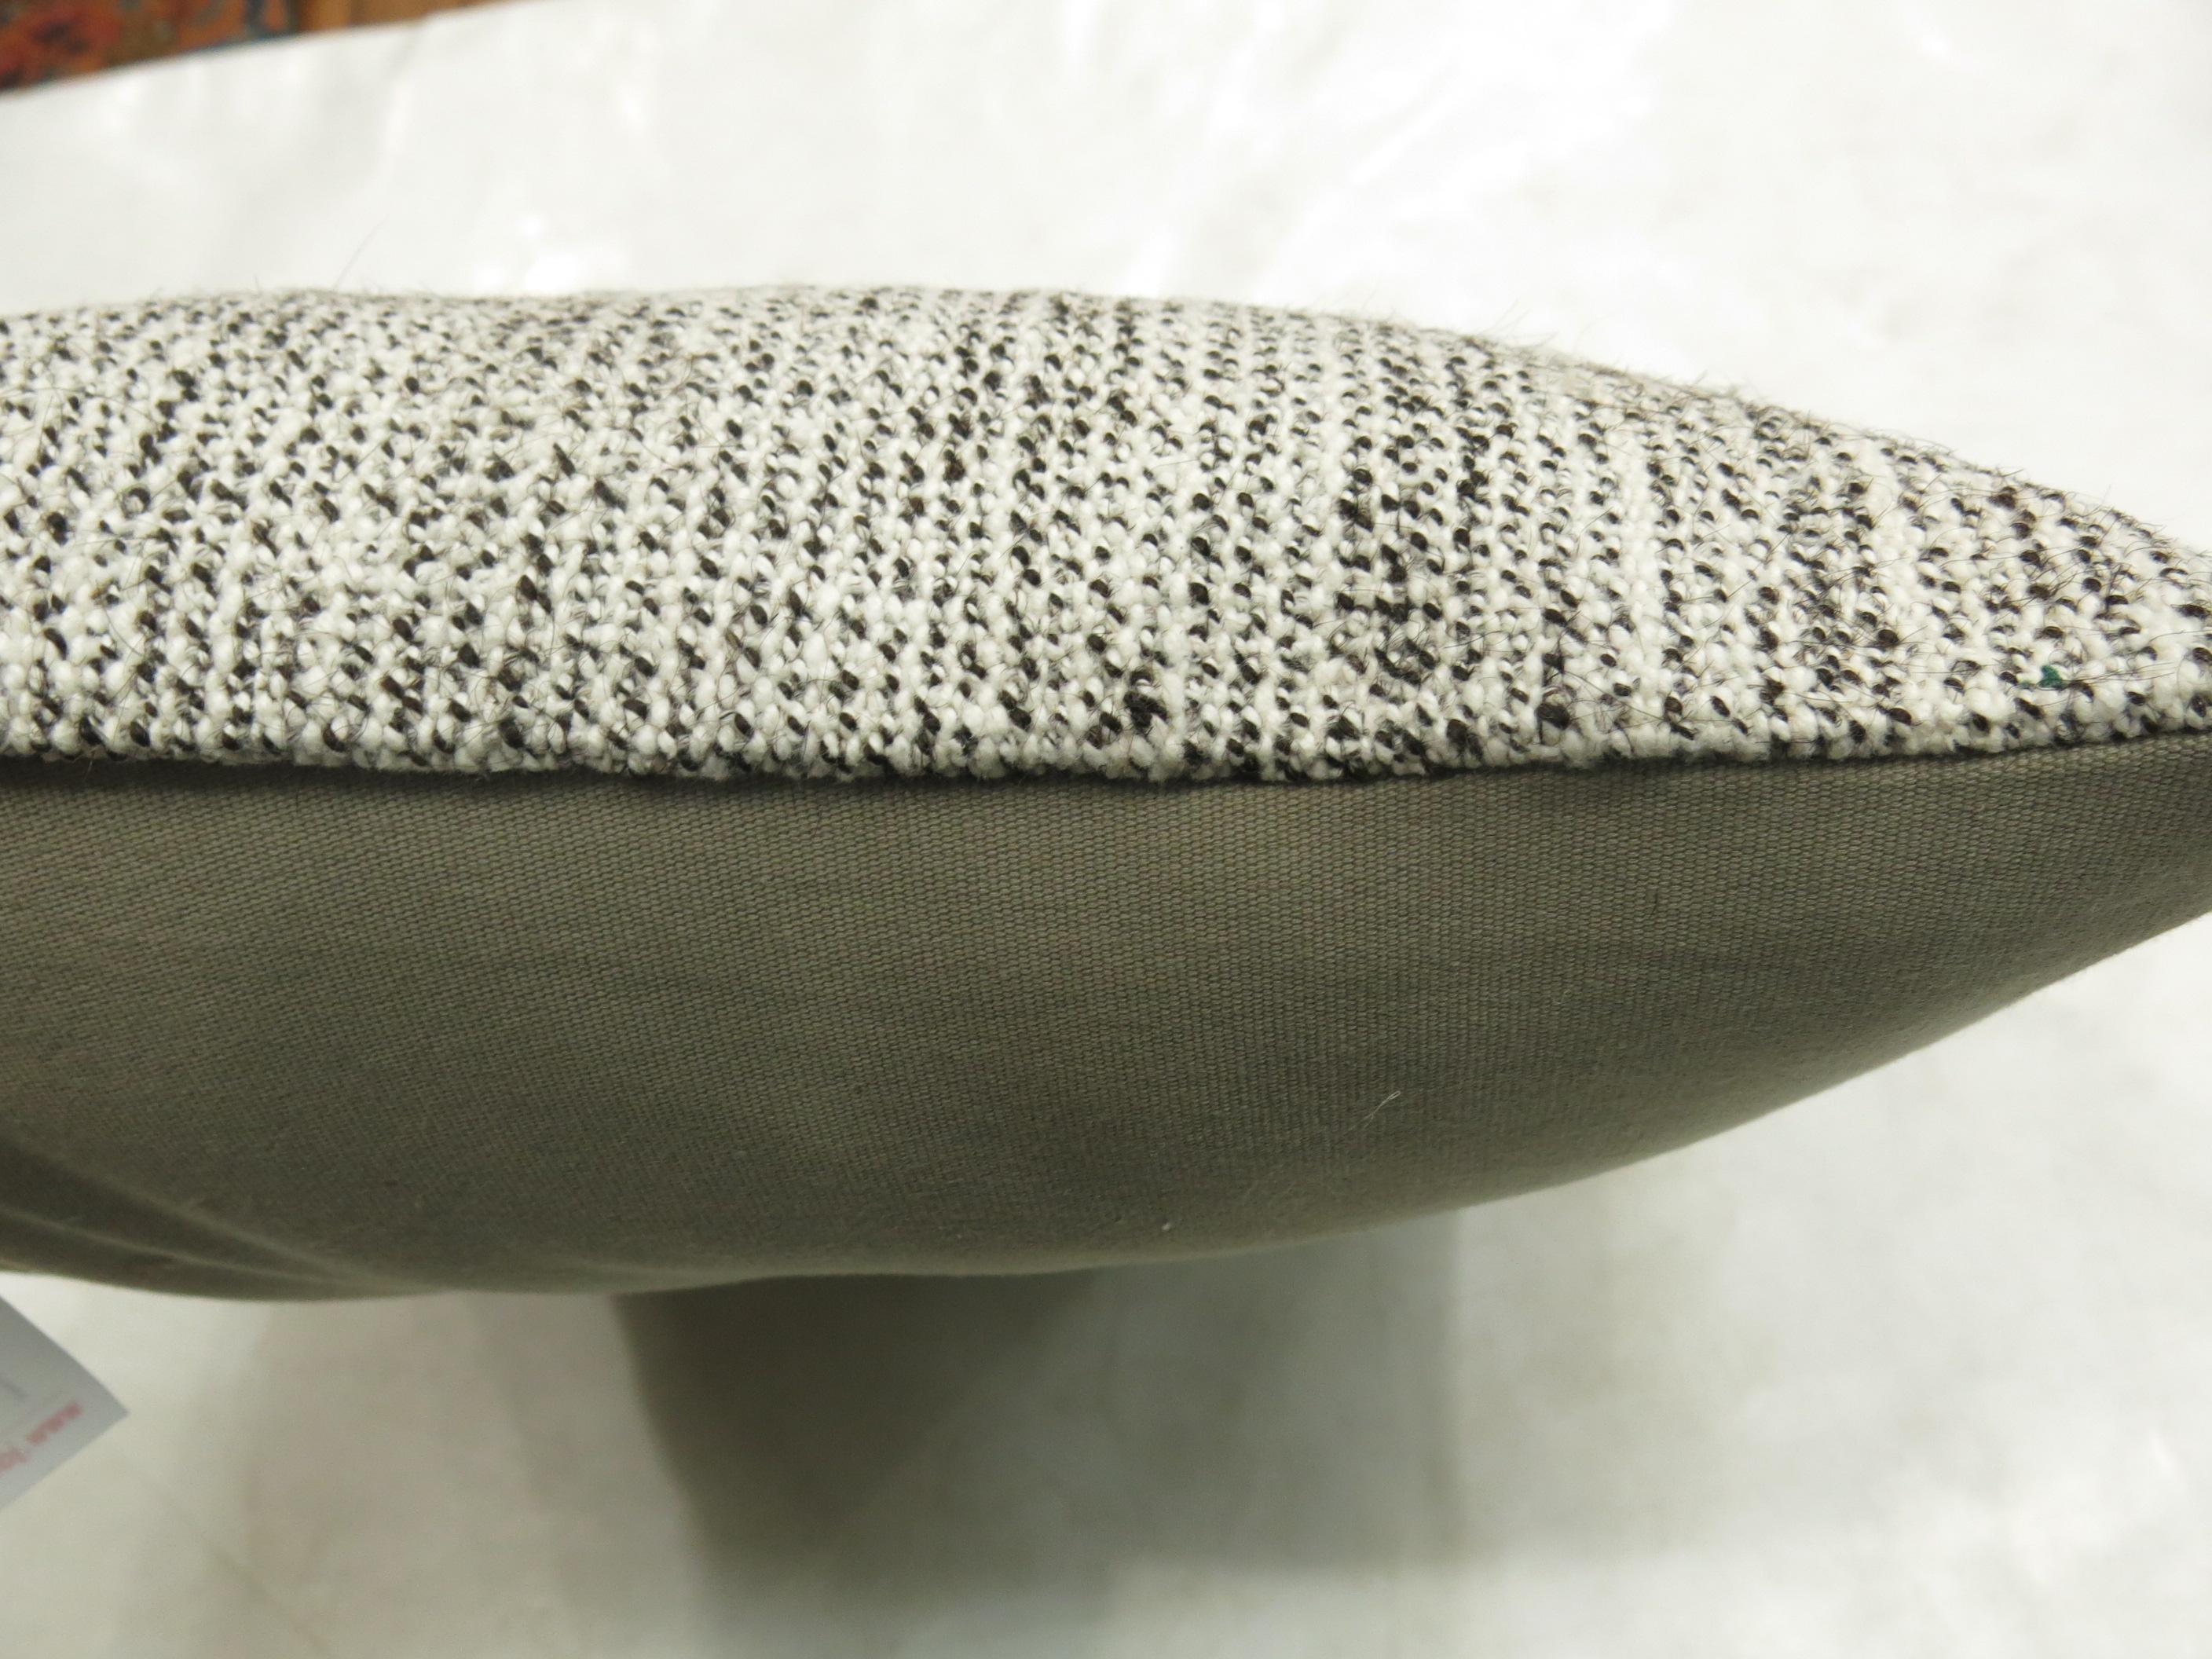 Coussin moucheté de couleur grise fabriqué à partir d'un Kilim turc vintage.

17'' x 18''